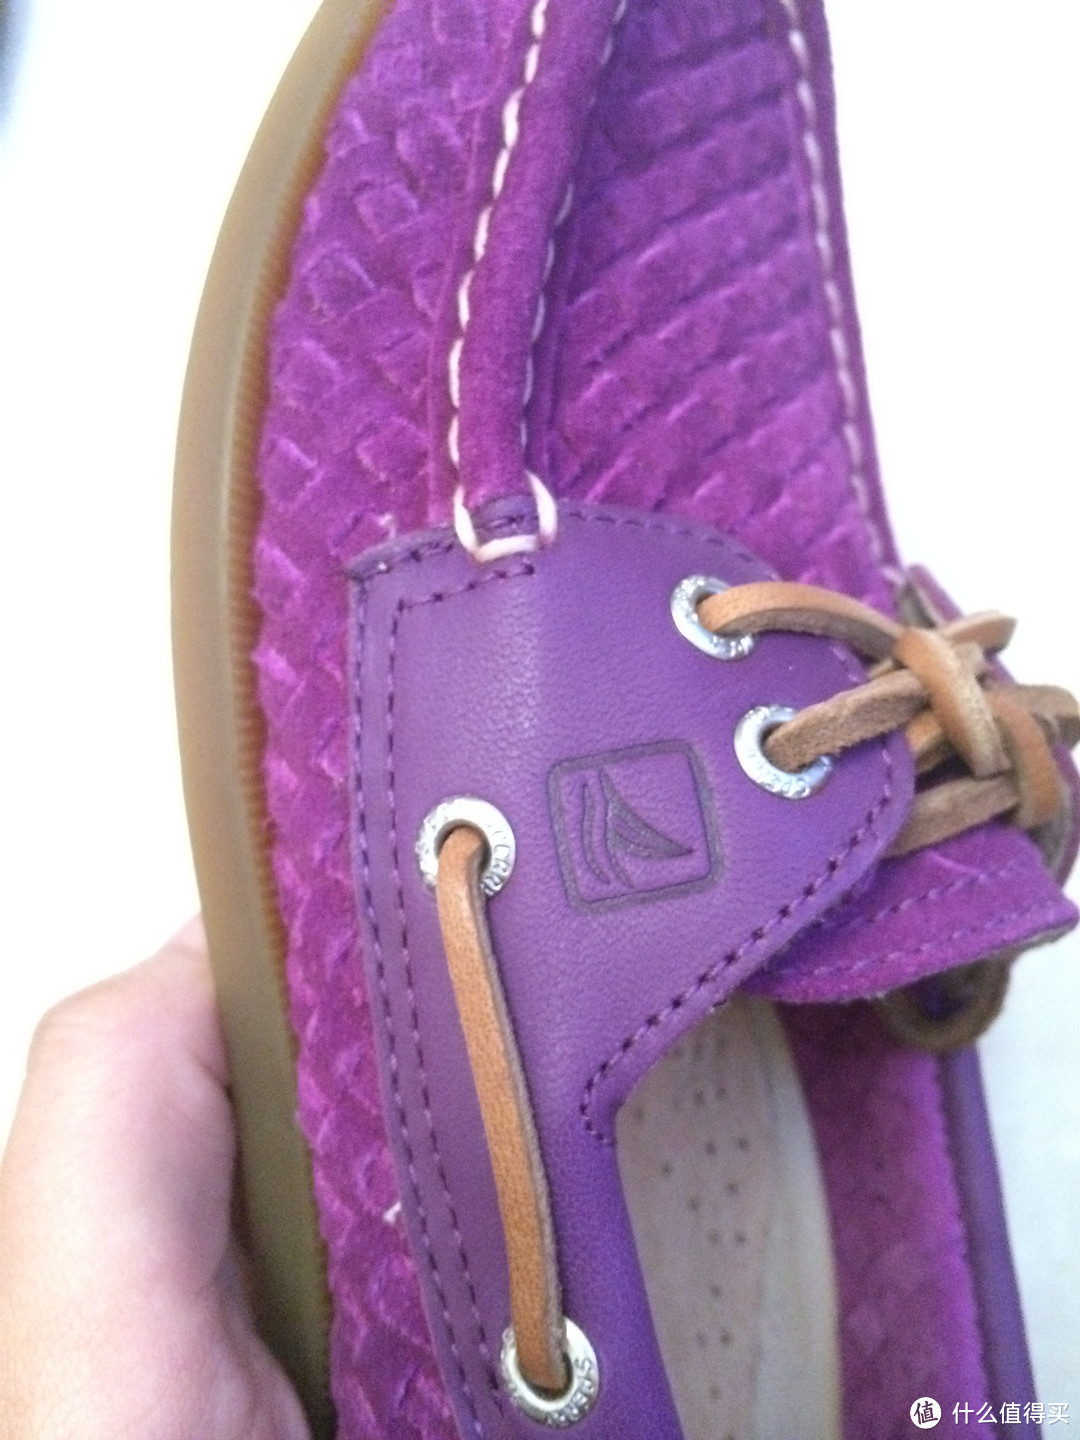 第一双船鞋：Sperry Top-Sider 女款船鞋，直邮15天完美收货